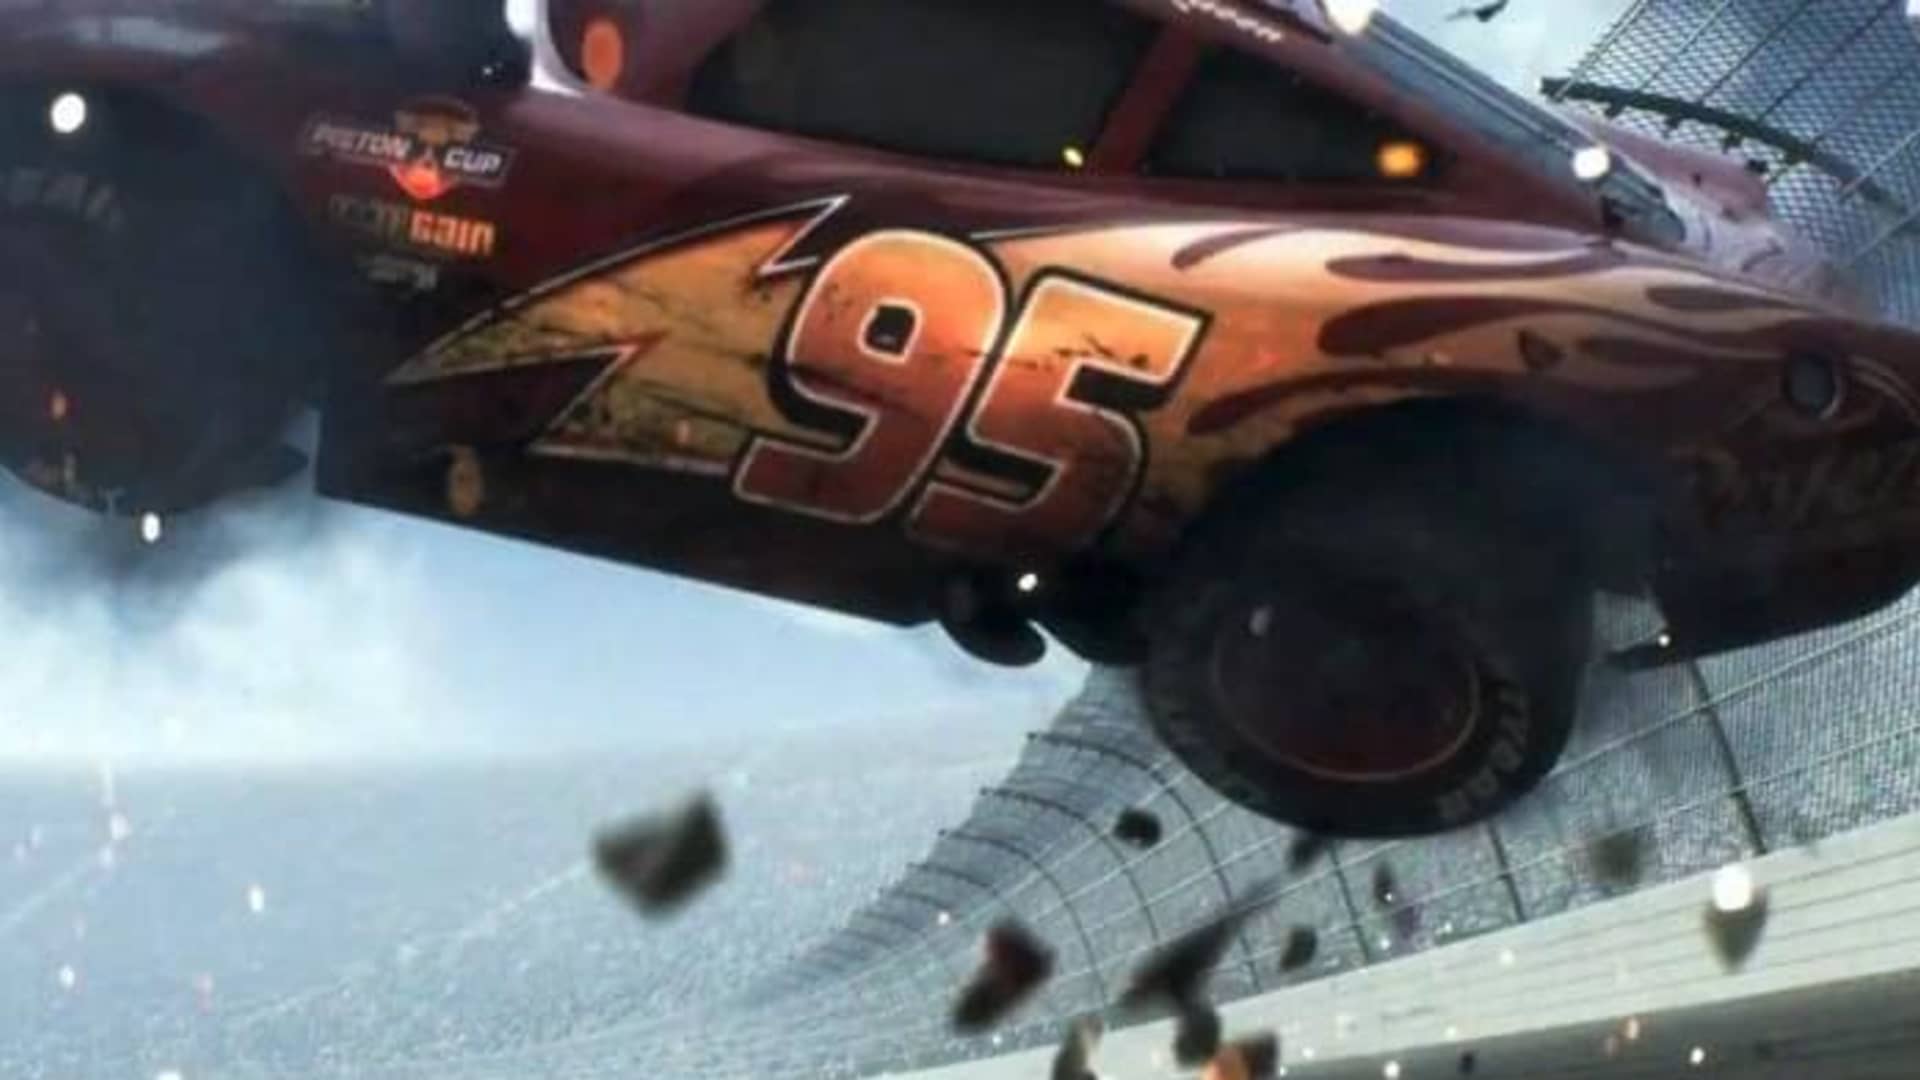 Cars 3 - Lightning McQueen Crash Explained 